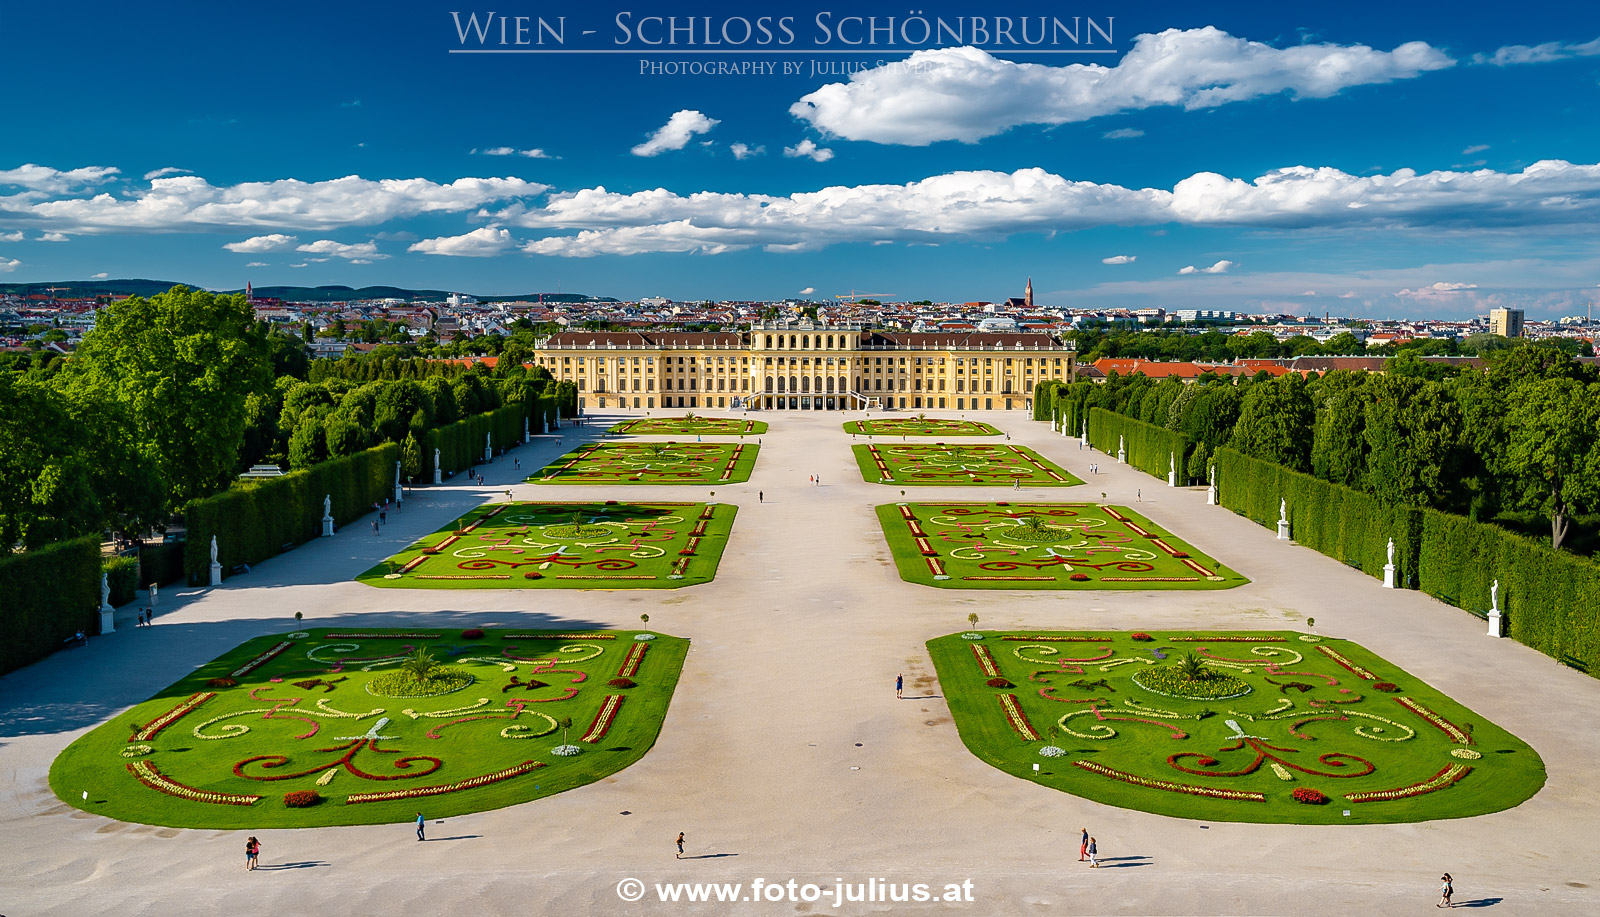 W7152a_Wien_Schloss_Schonbrunn.jpg, 600kB